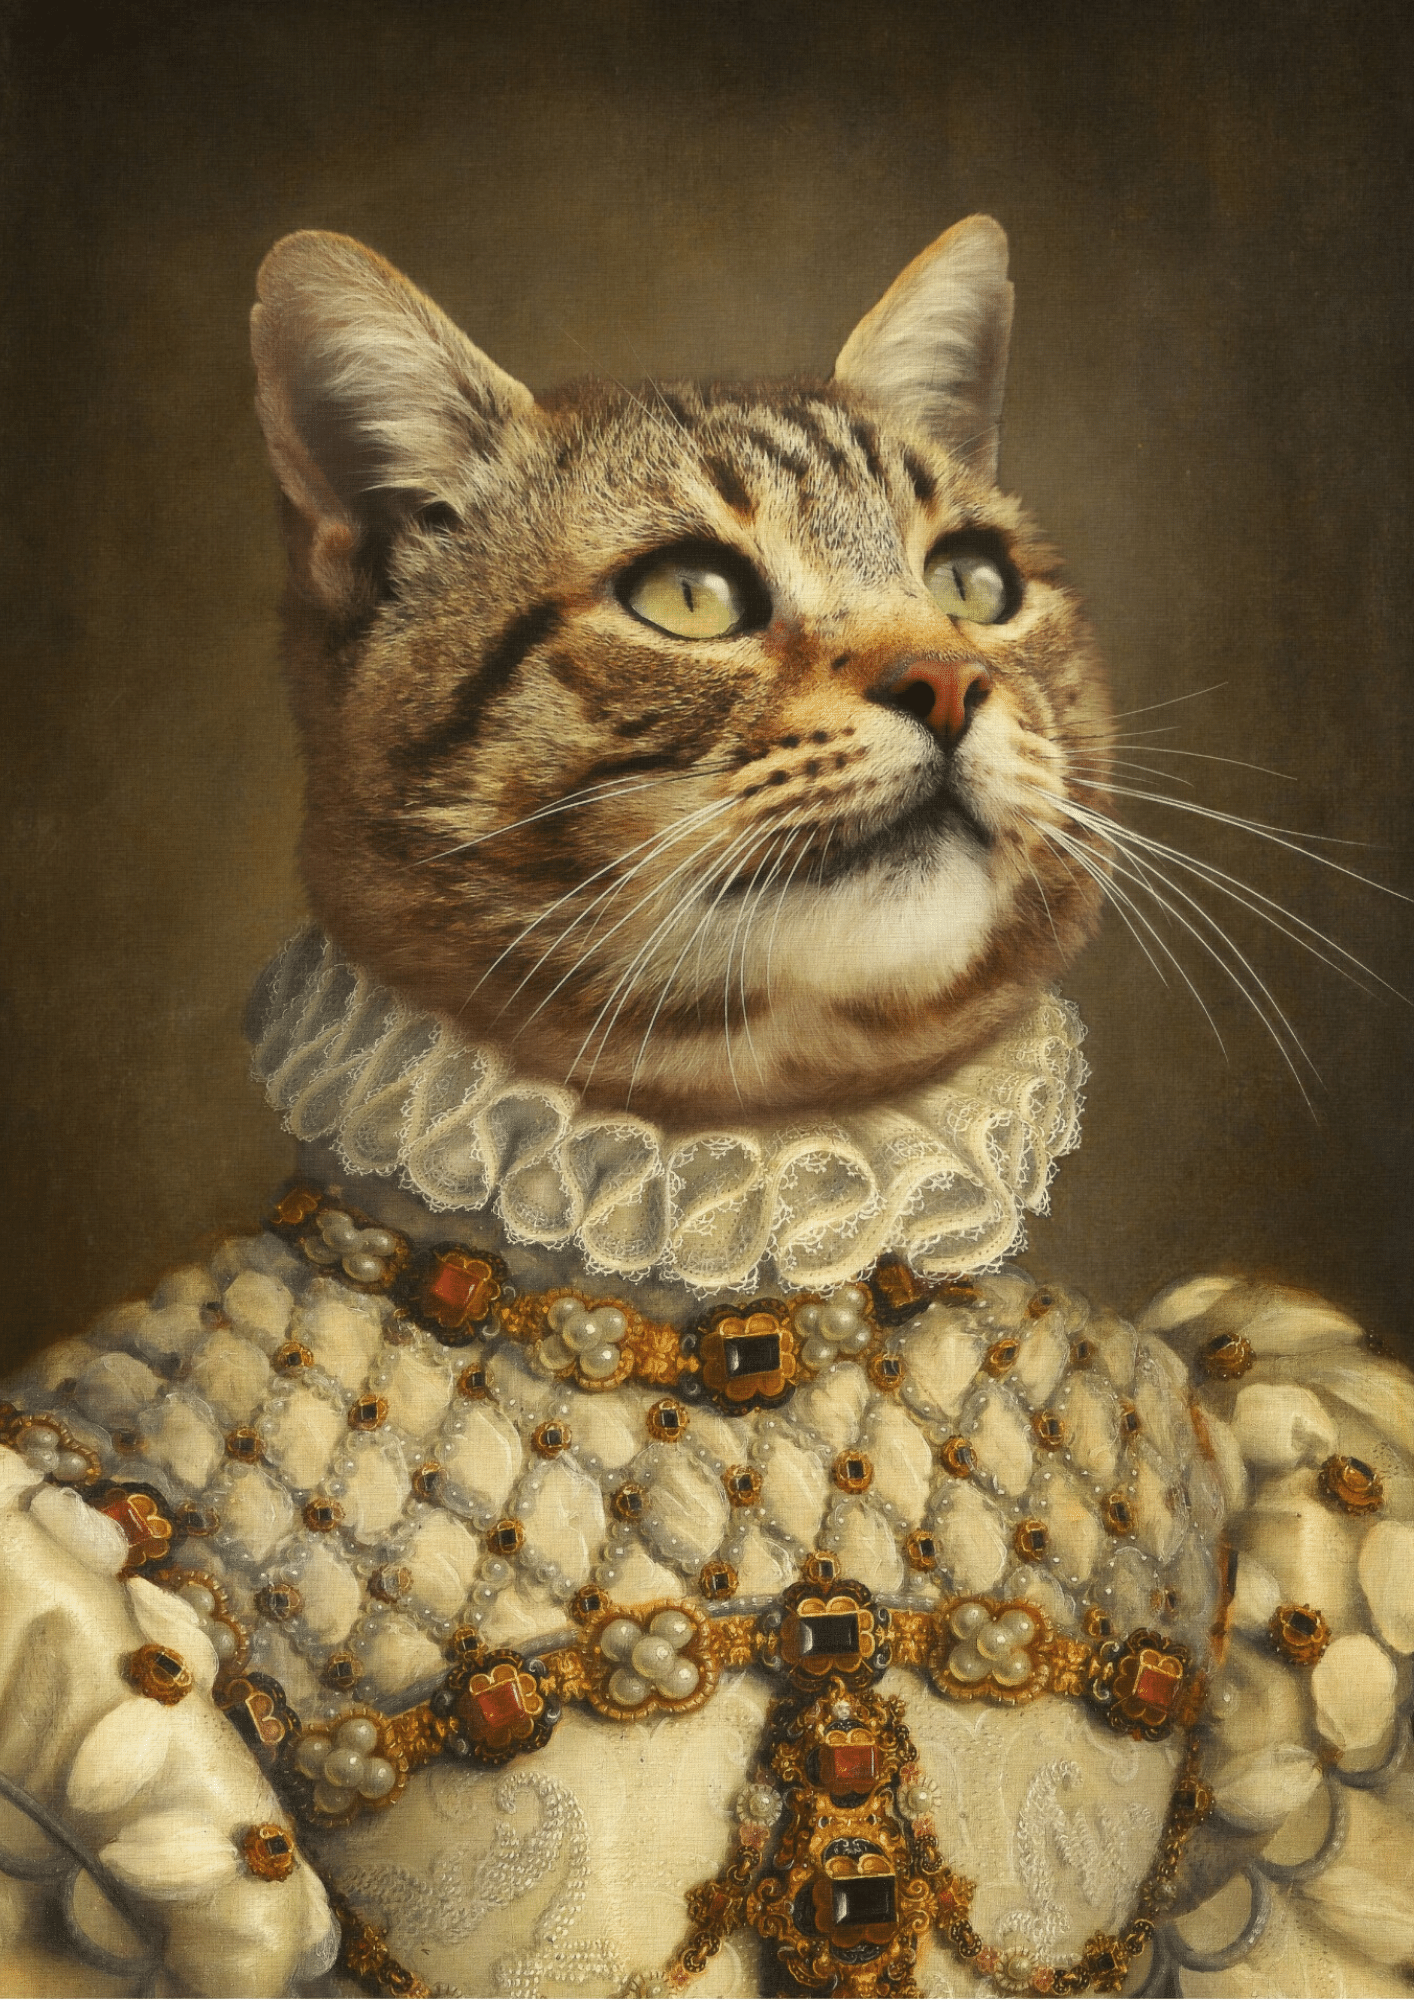 THE ROYAL PRINCESS - CUSTOM PET PORTRAIT portrait-my-pet.com 